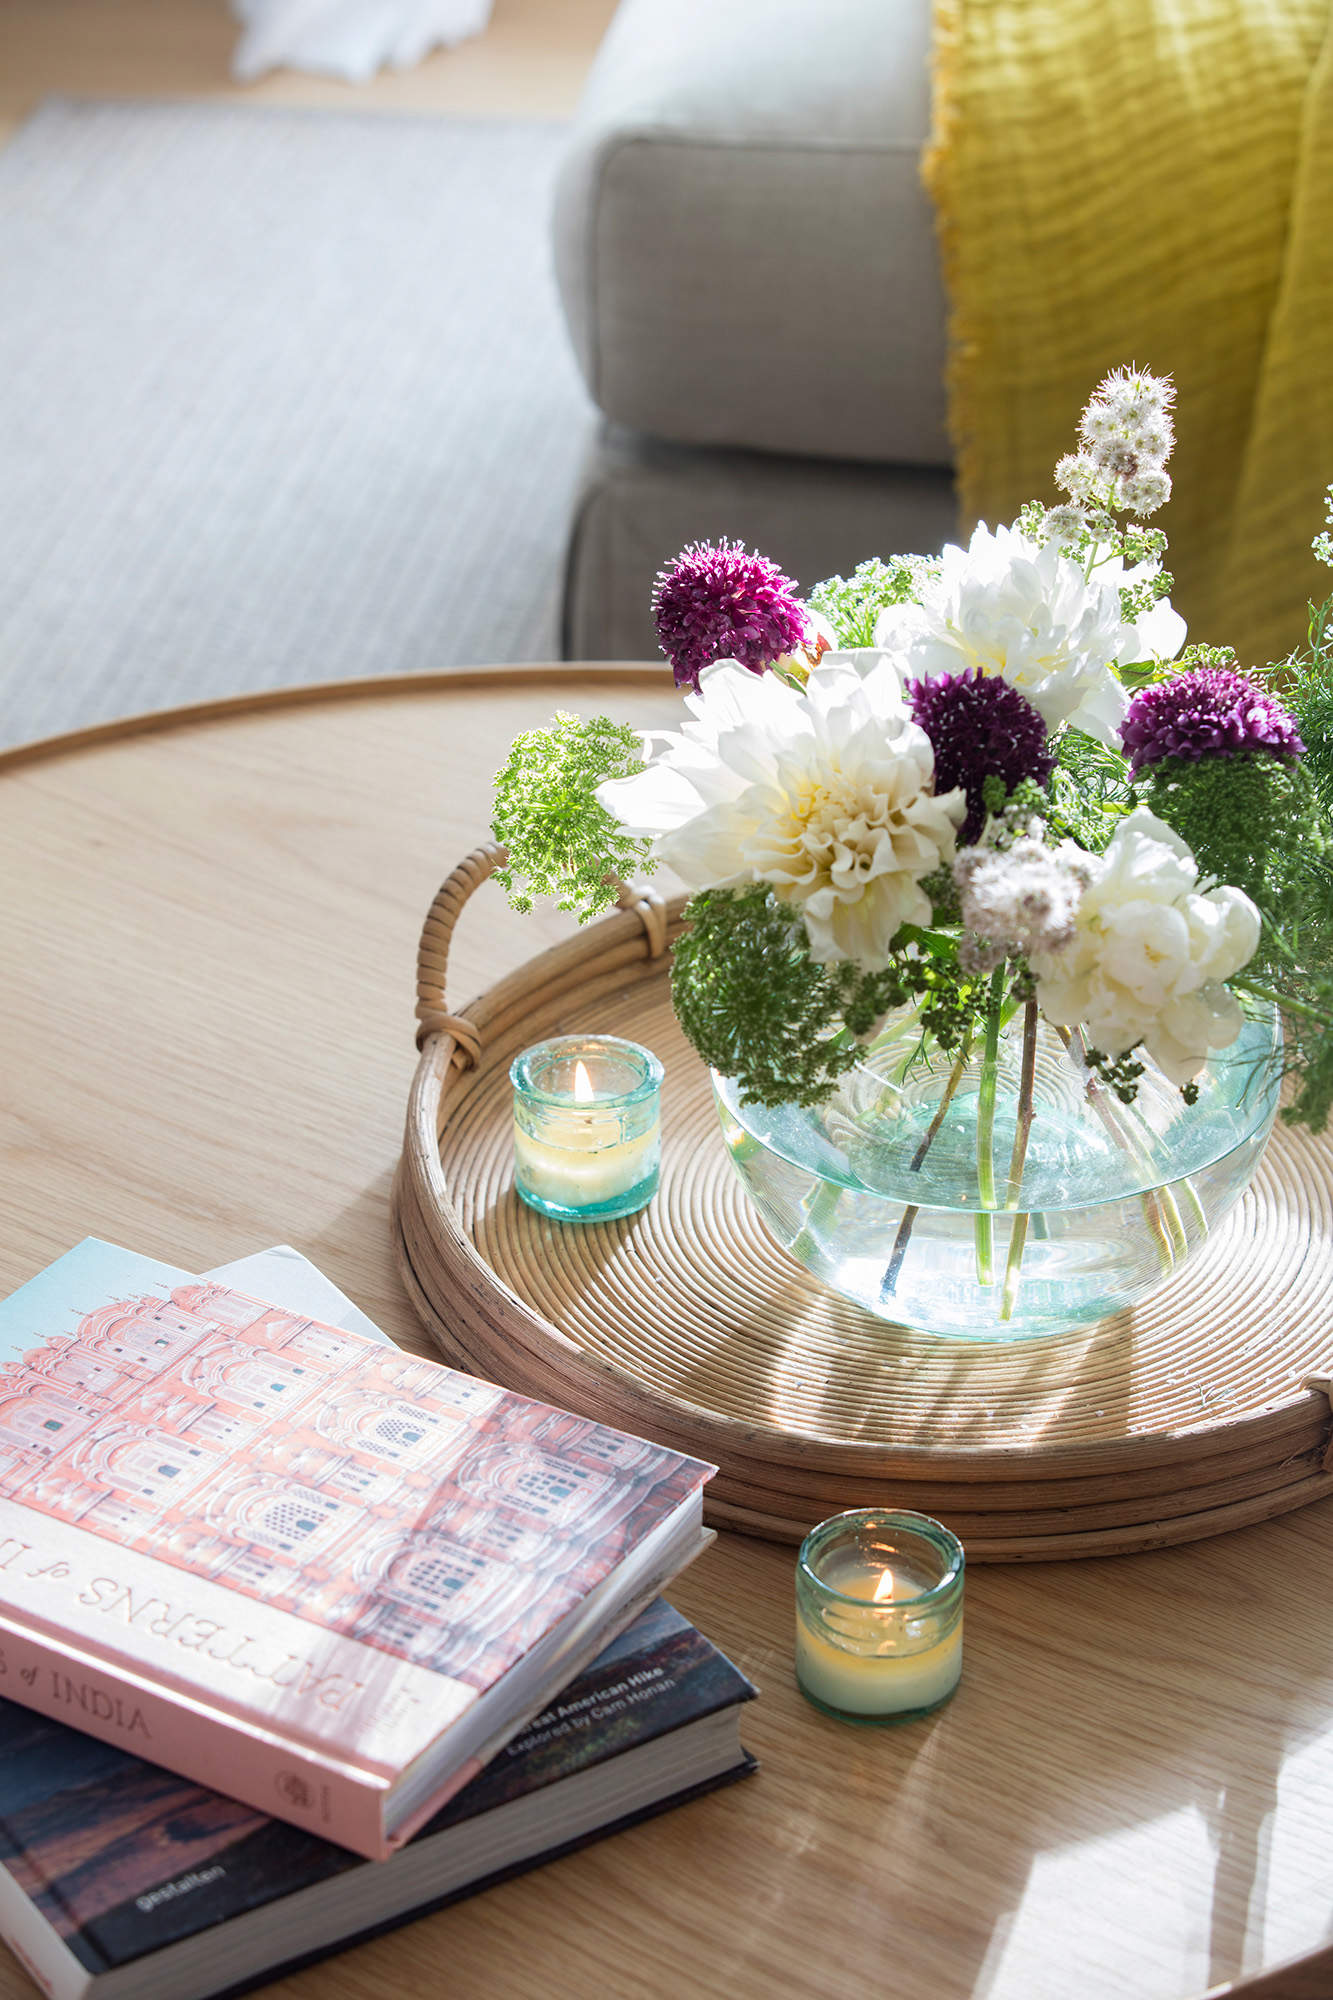 Detalle de velas y flores sobre una mesa de centro